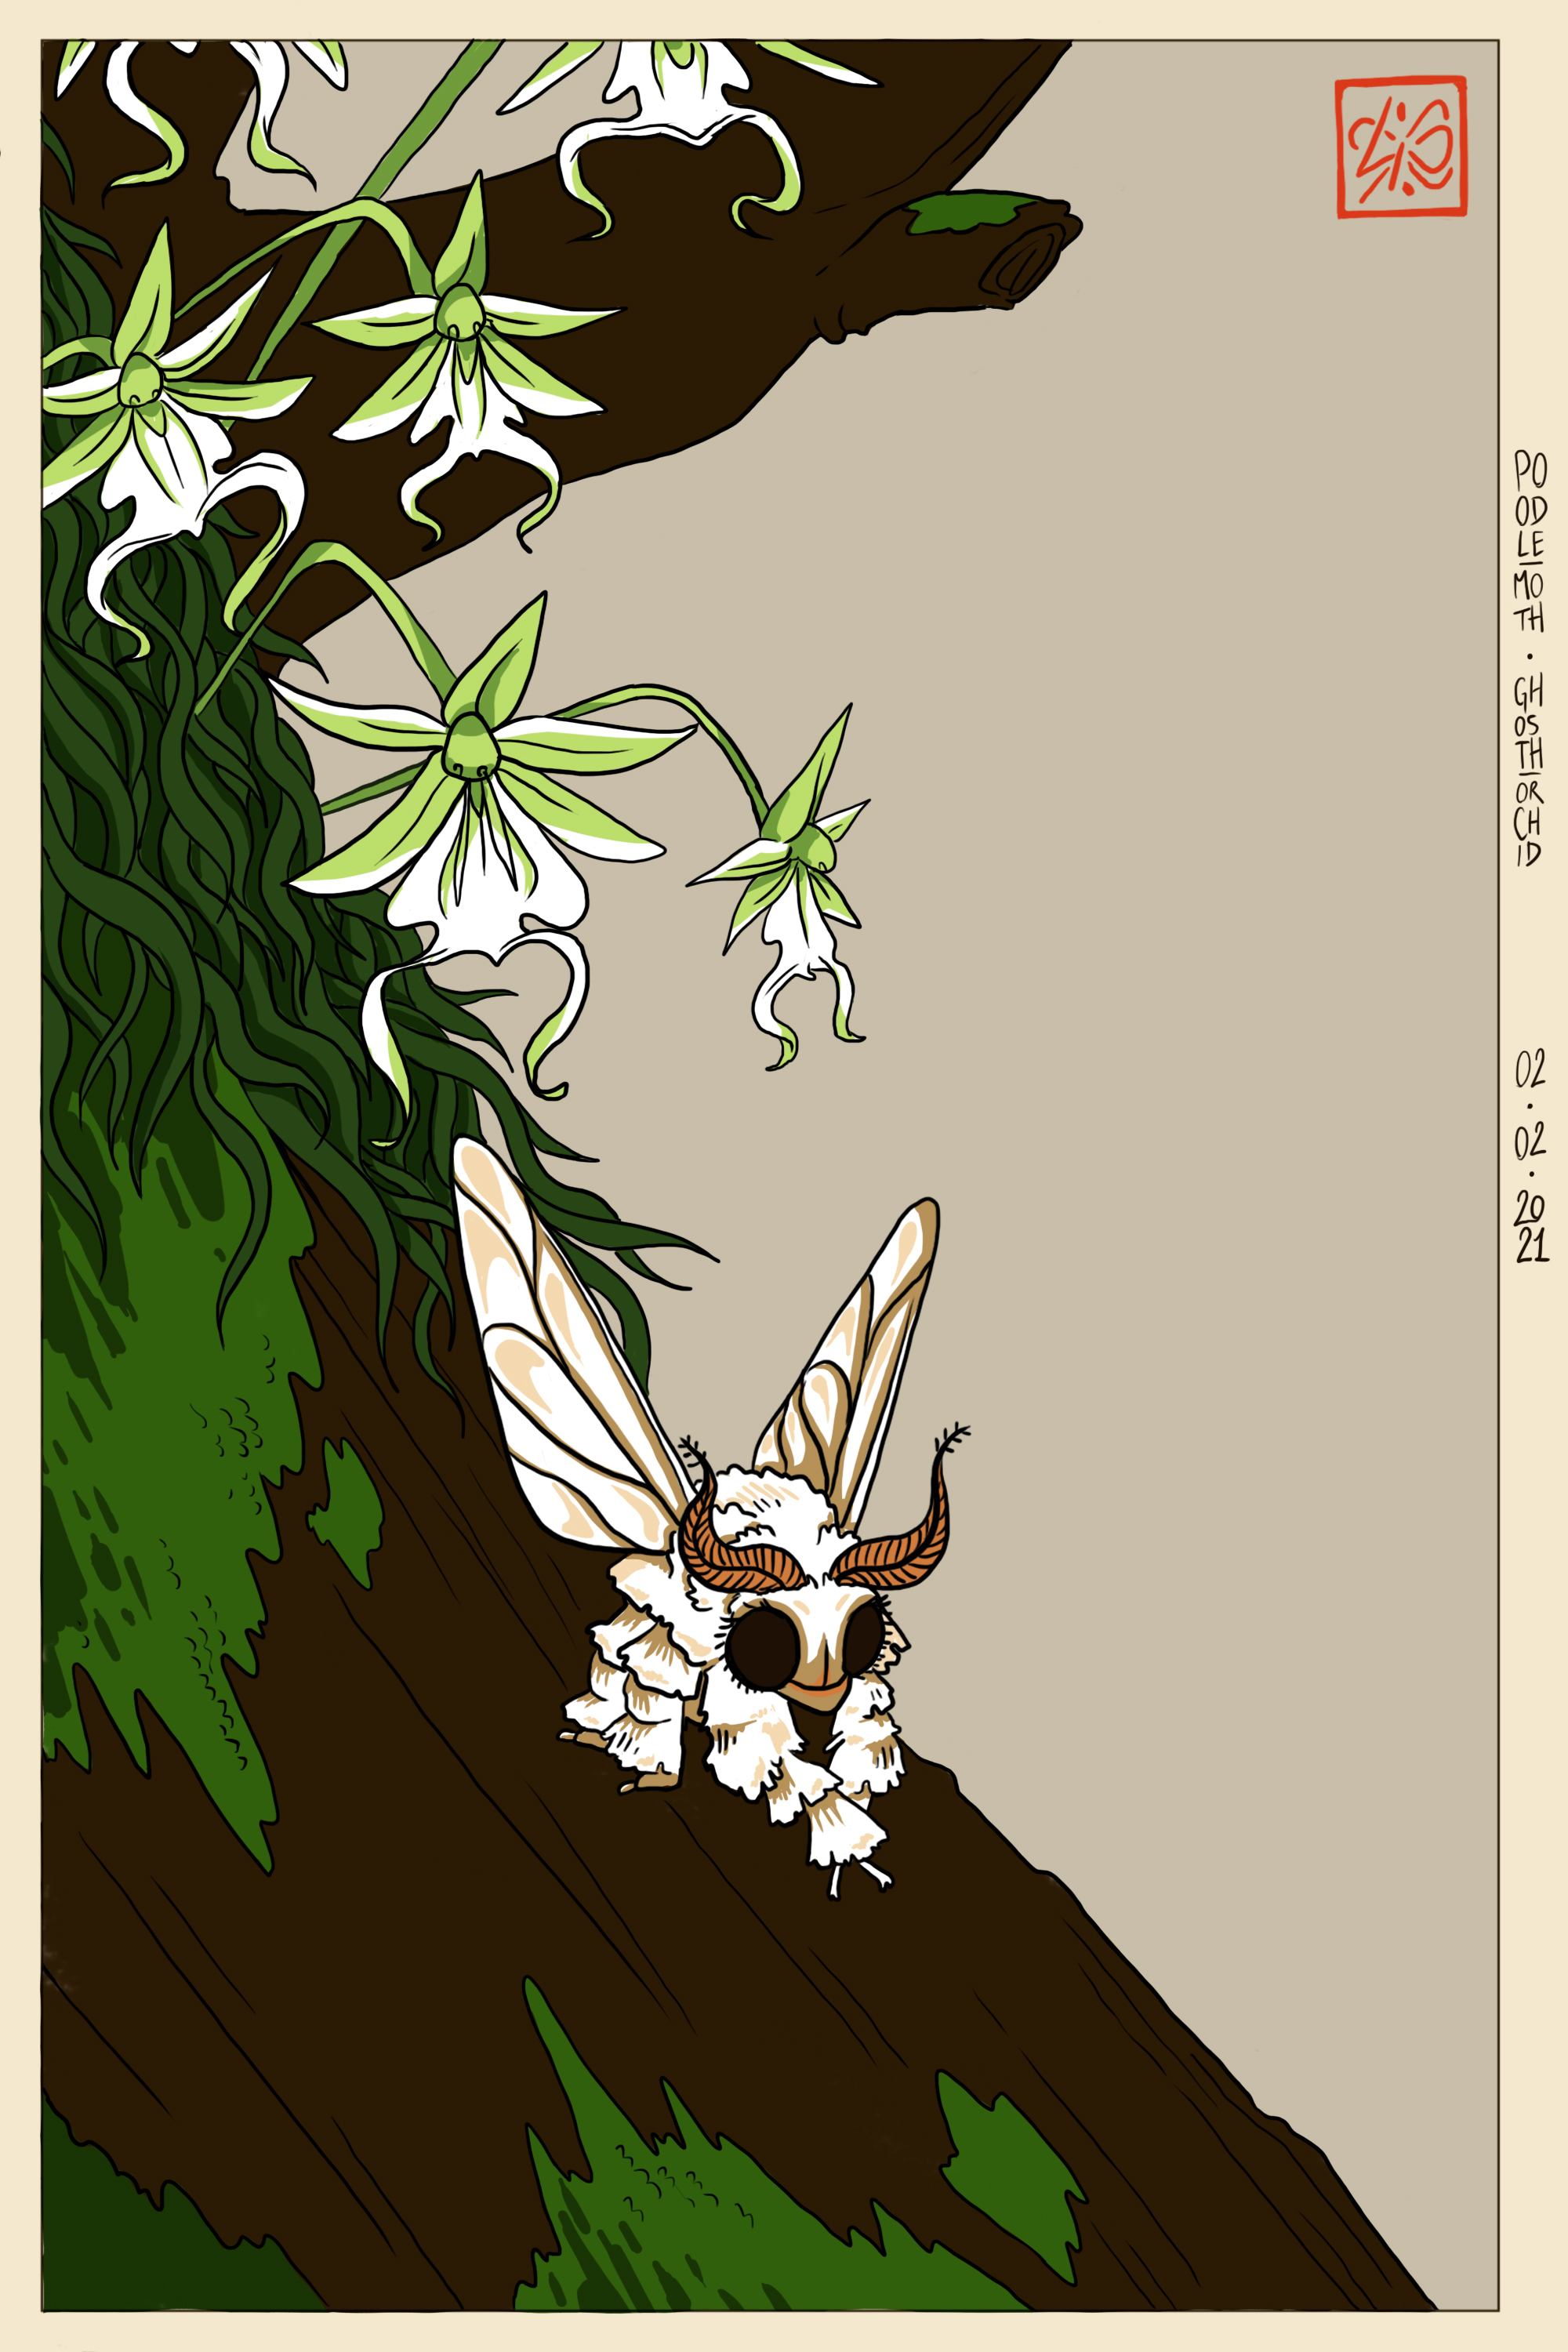 Poodle moth